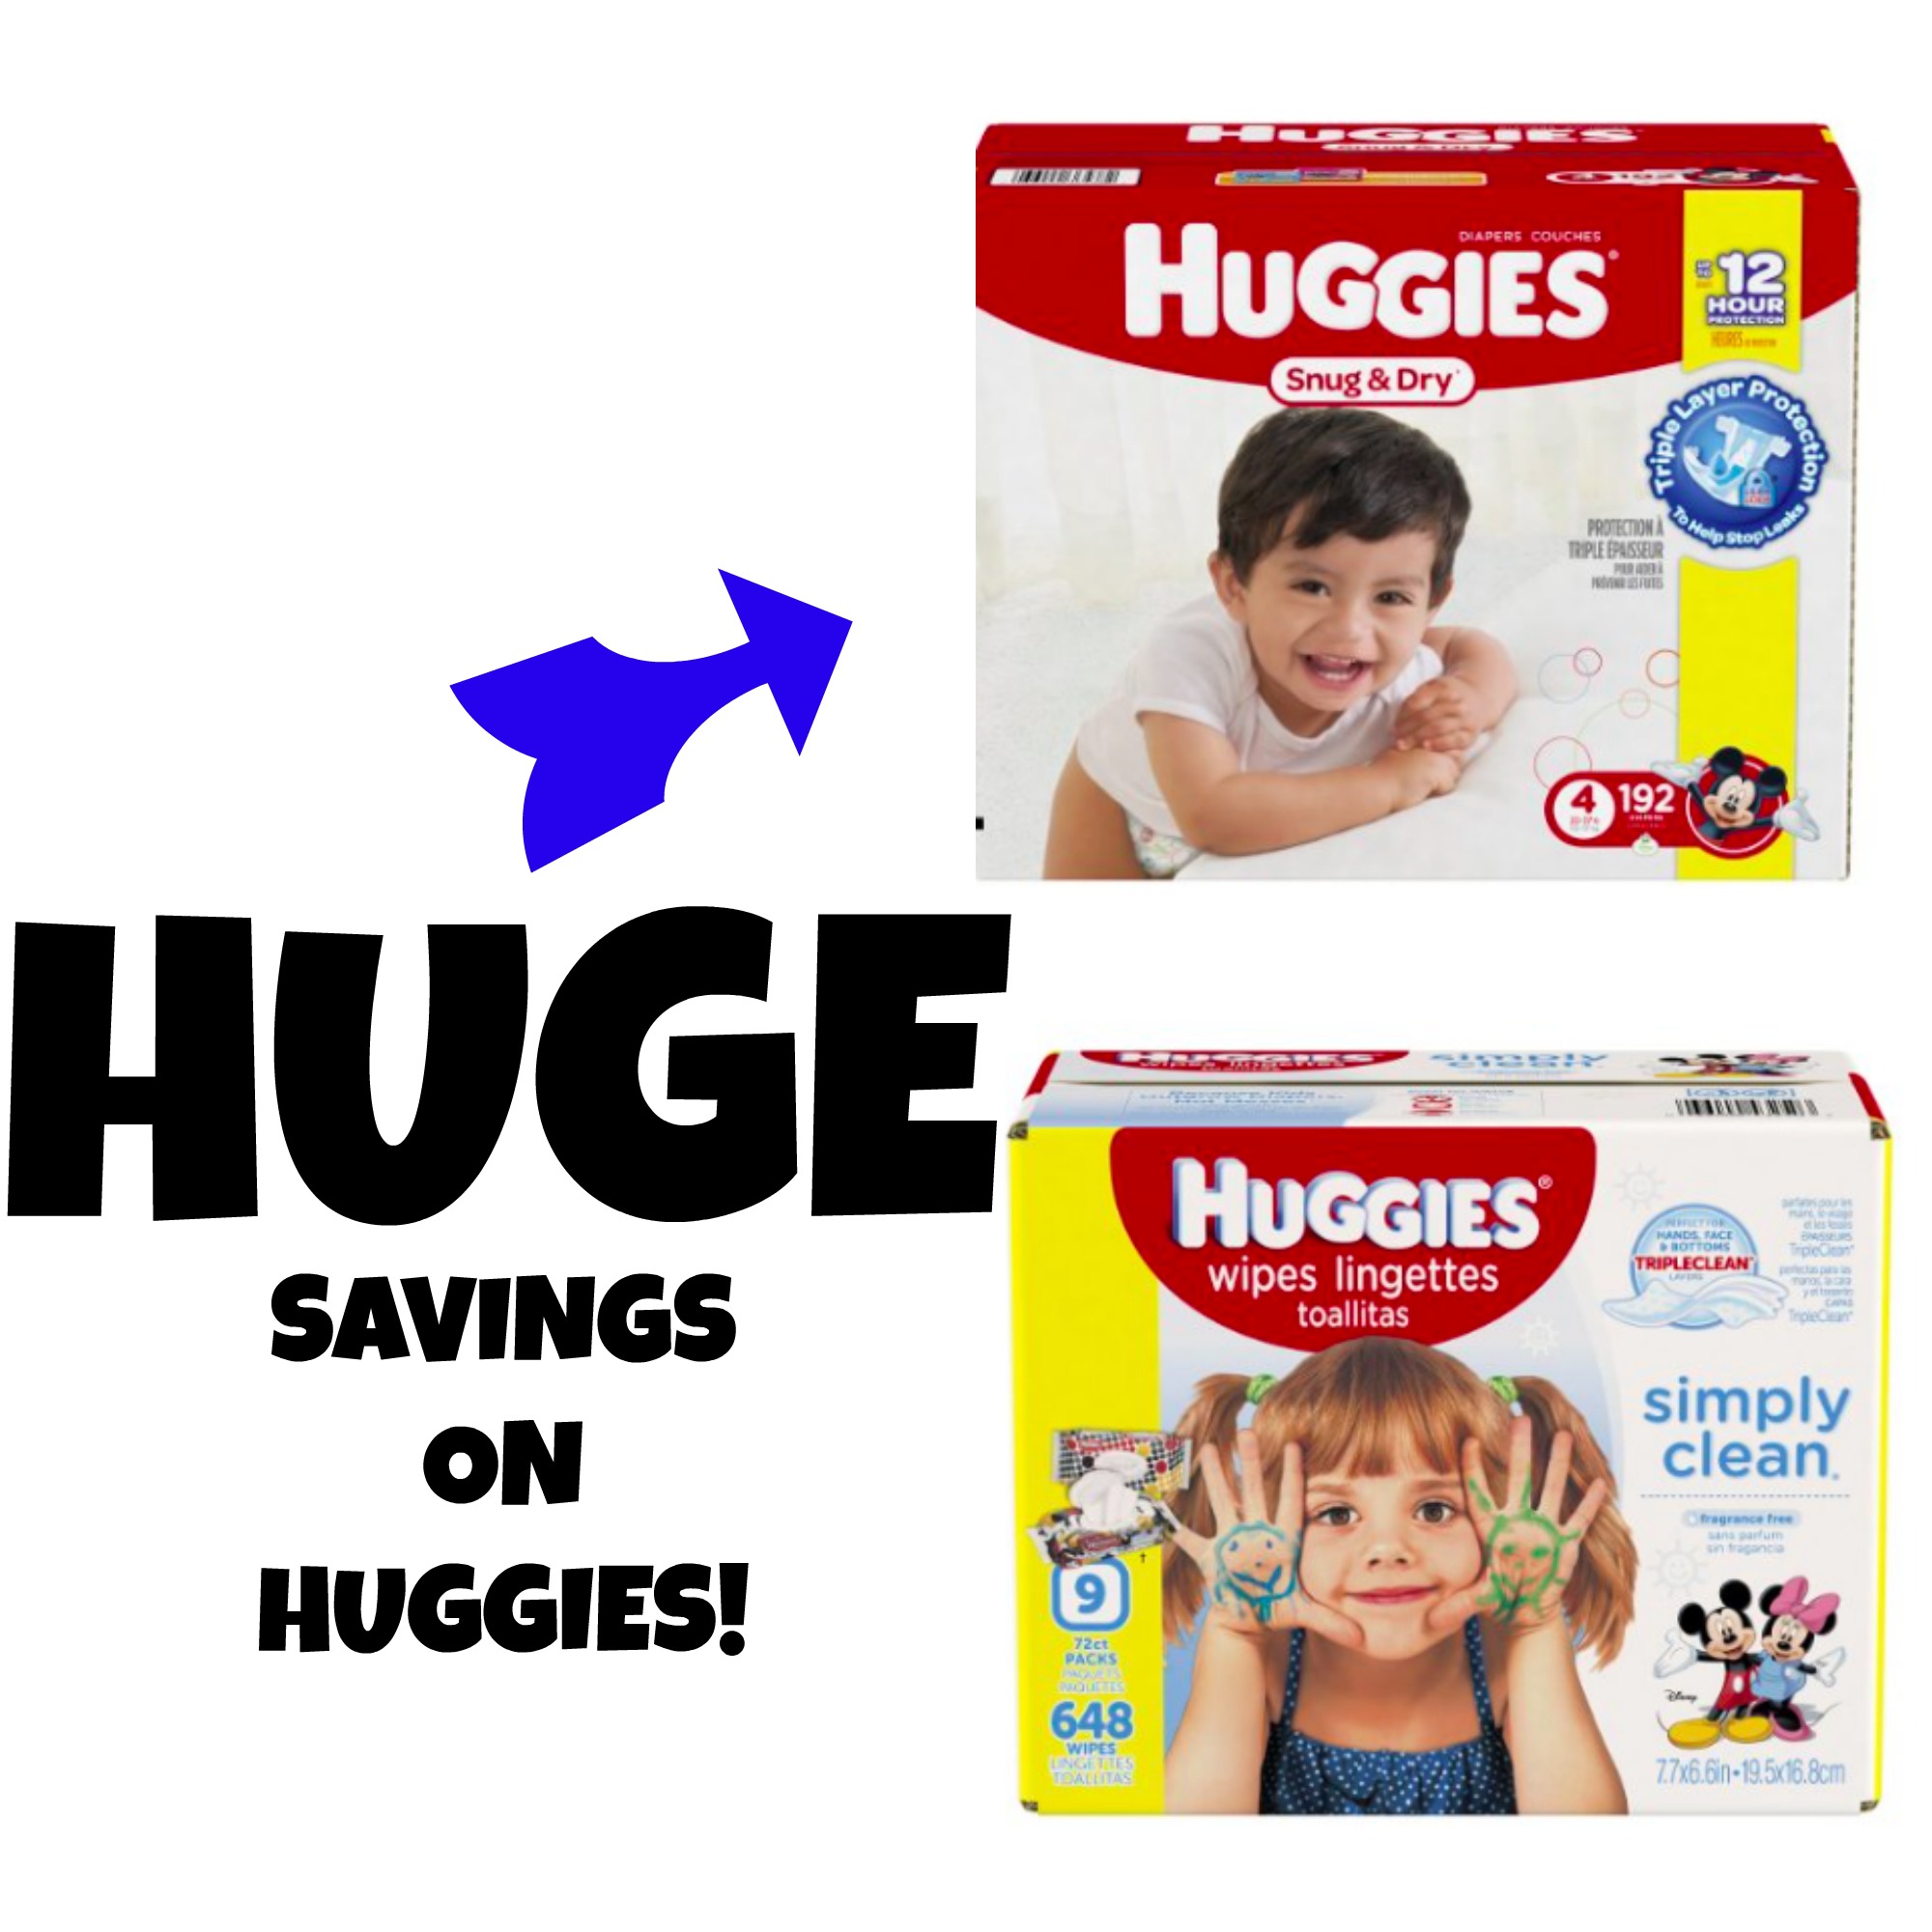 HUGE SAVINGS ON HUGGIES